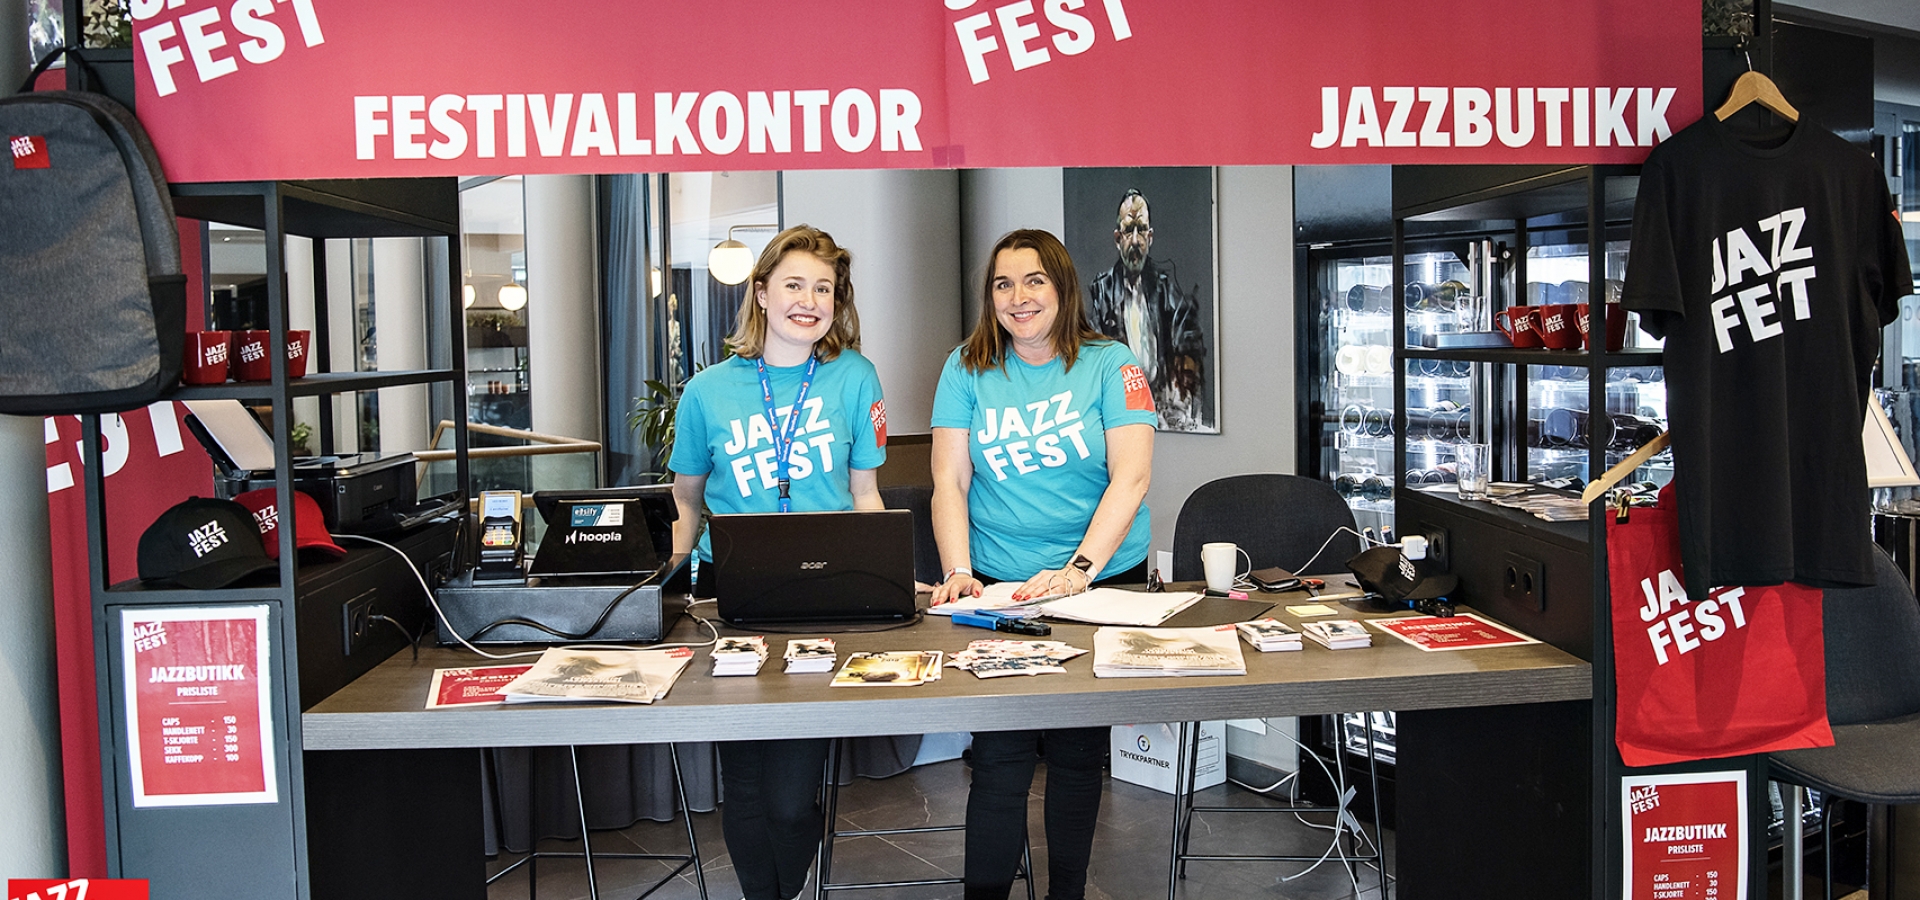 Jazzfest søker frivillige